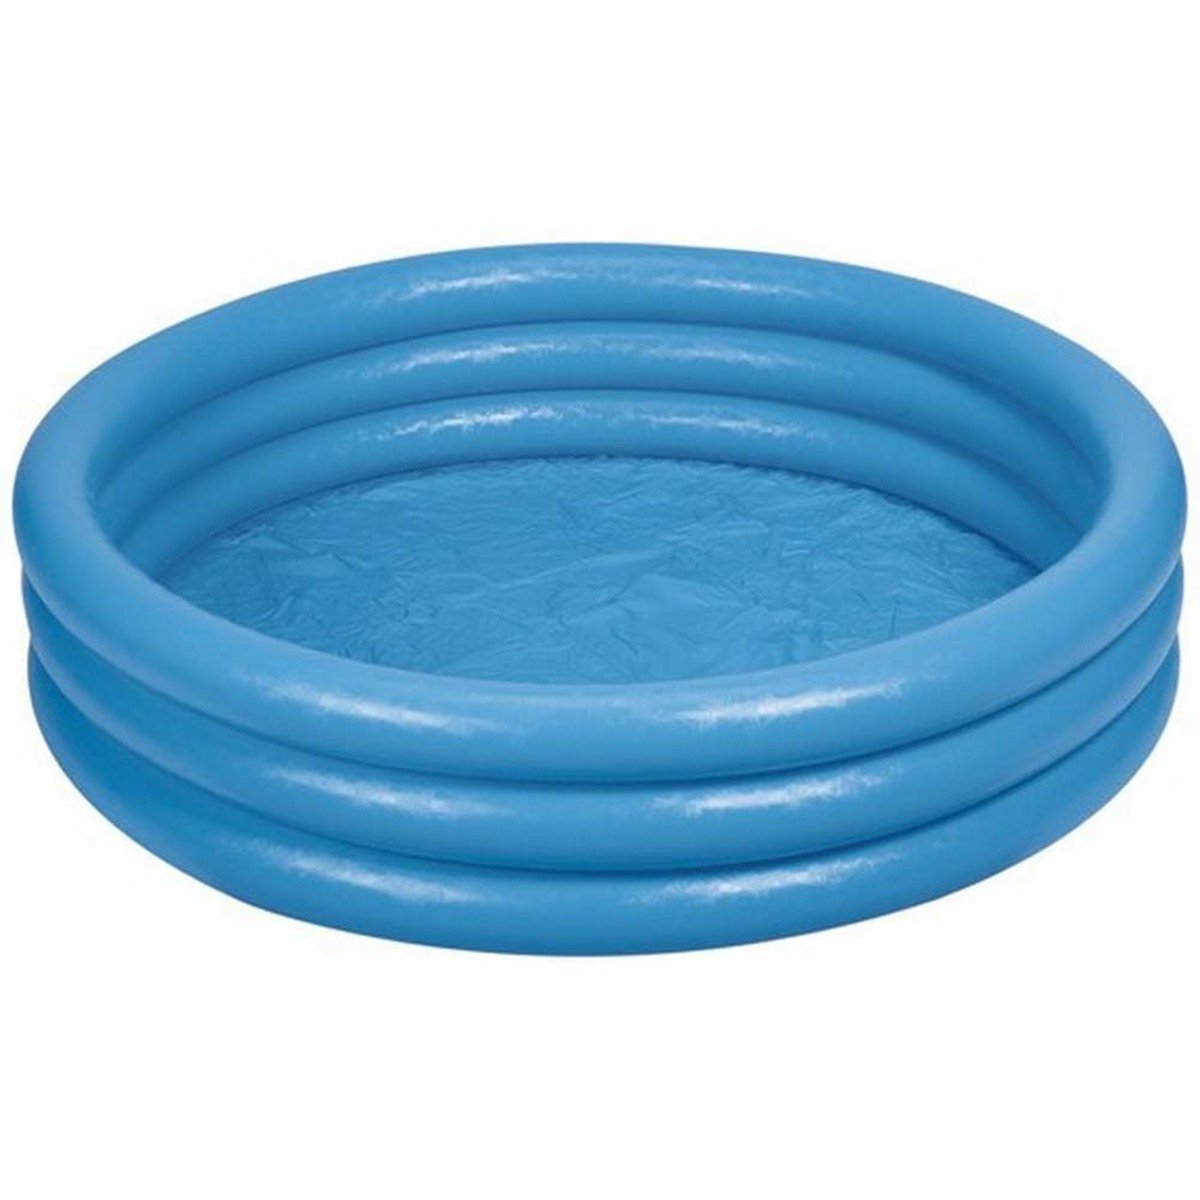 انتكس مسبح بلاستيك أزرق 59416